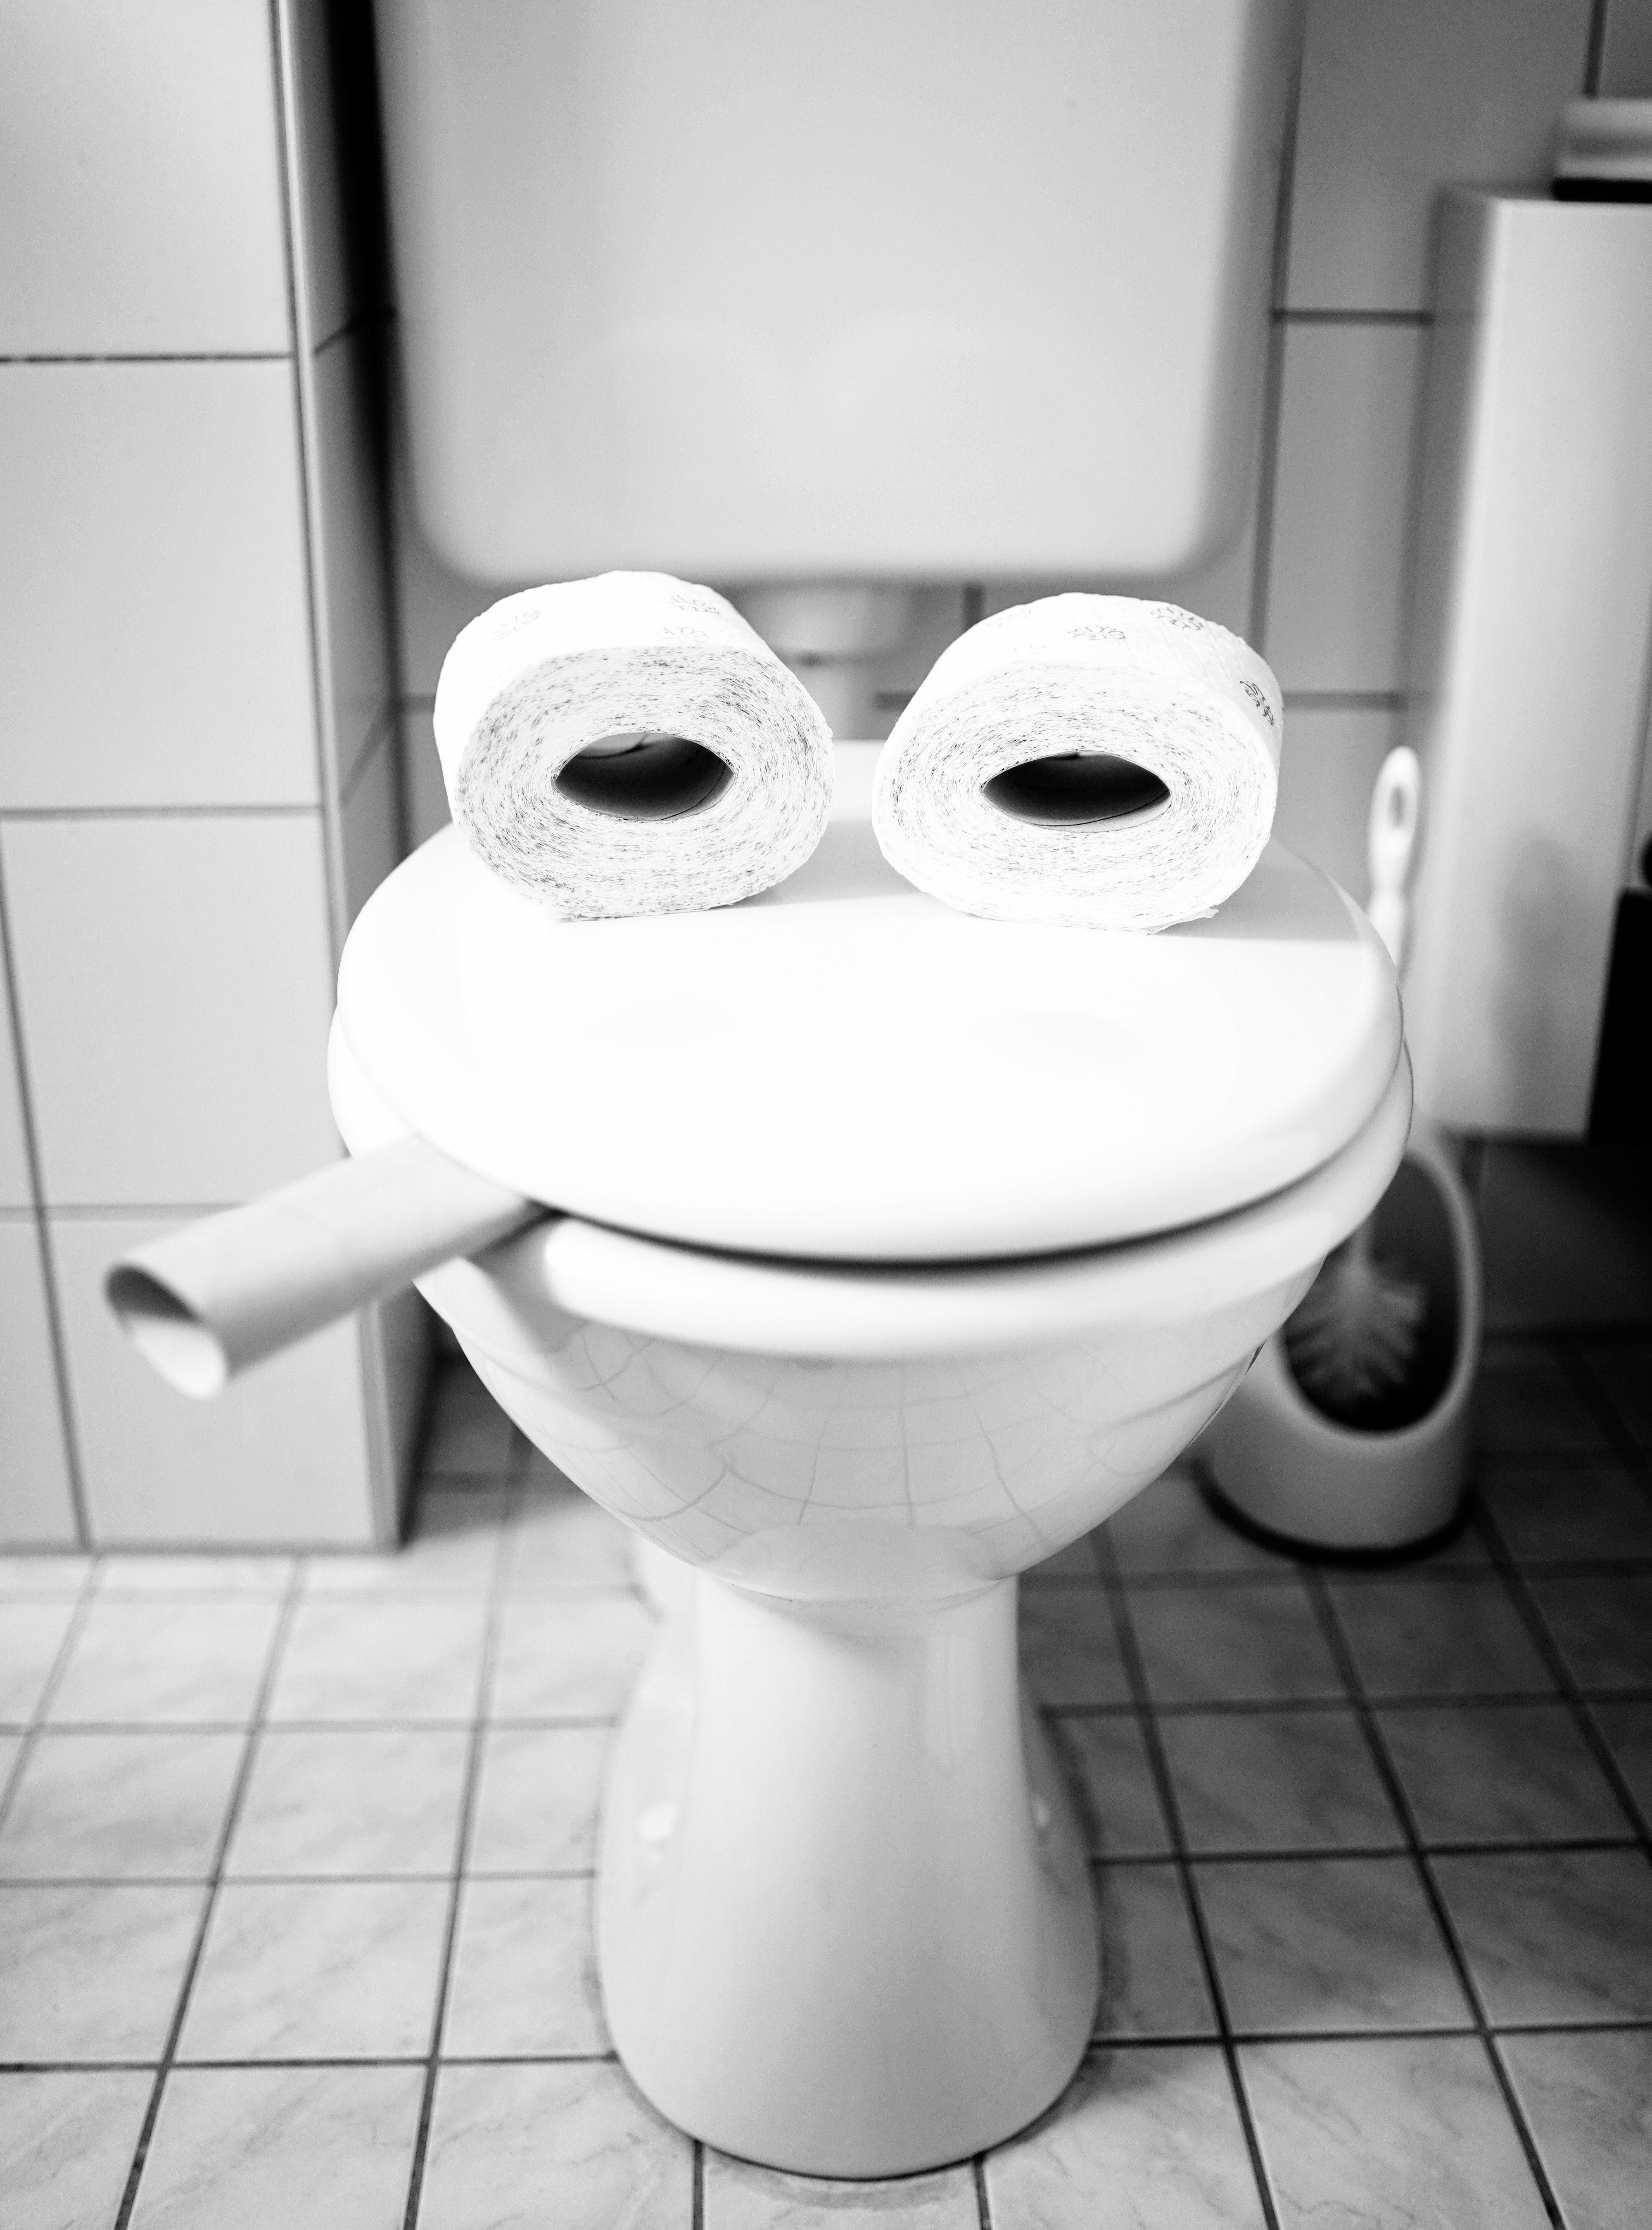 Smiling Toilet